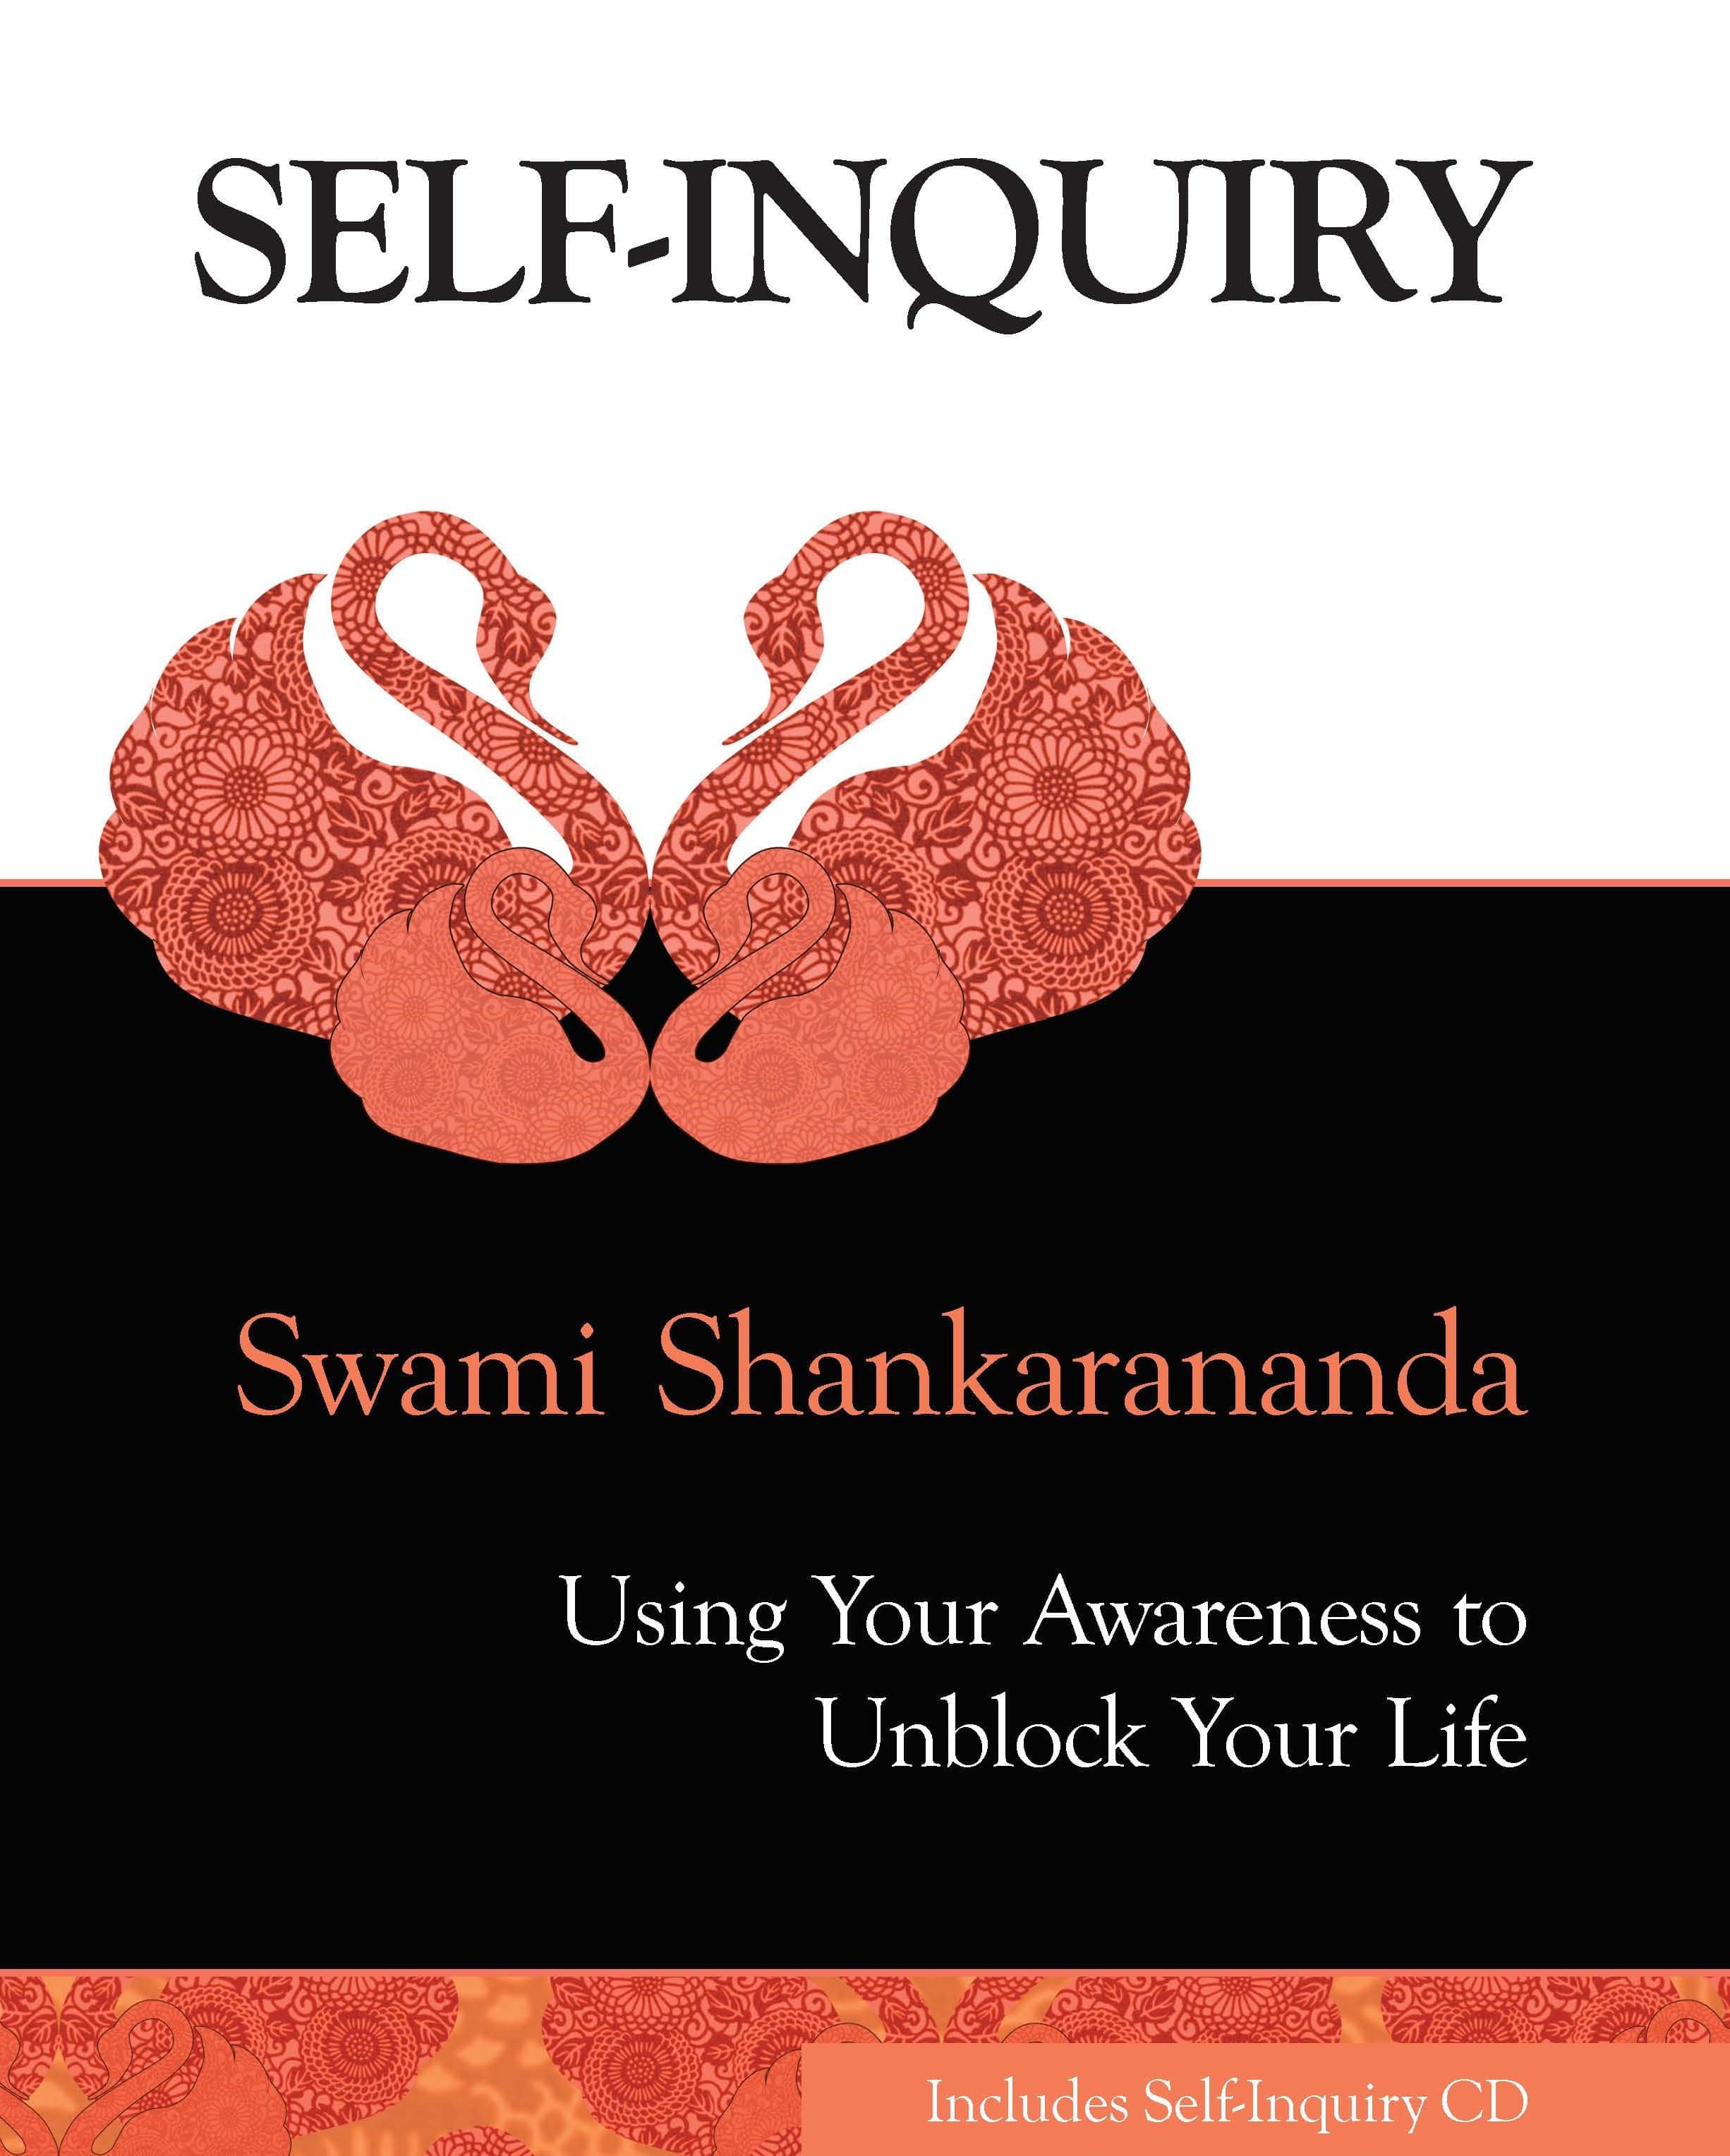 Self-inquiry CD - Track 2 - Healing Meditation - Swami Shankarananda